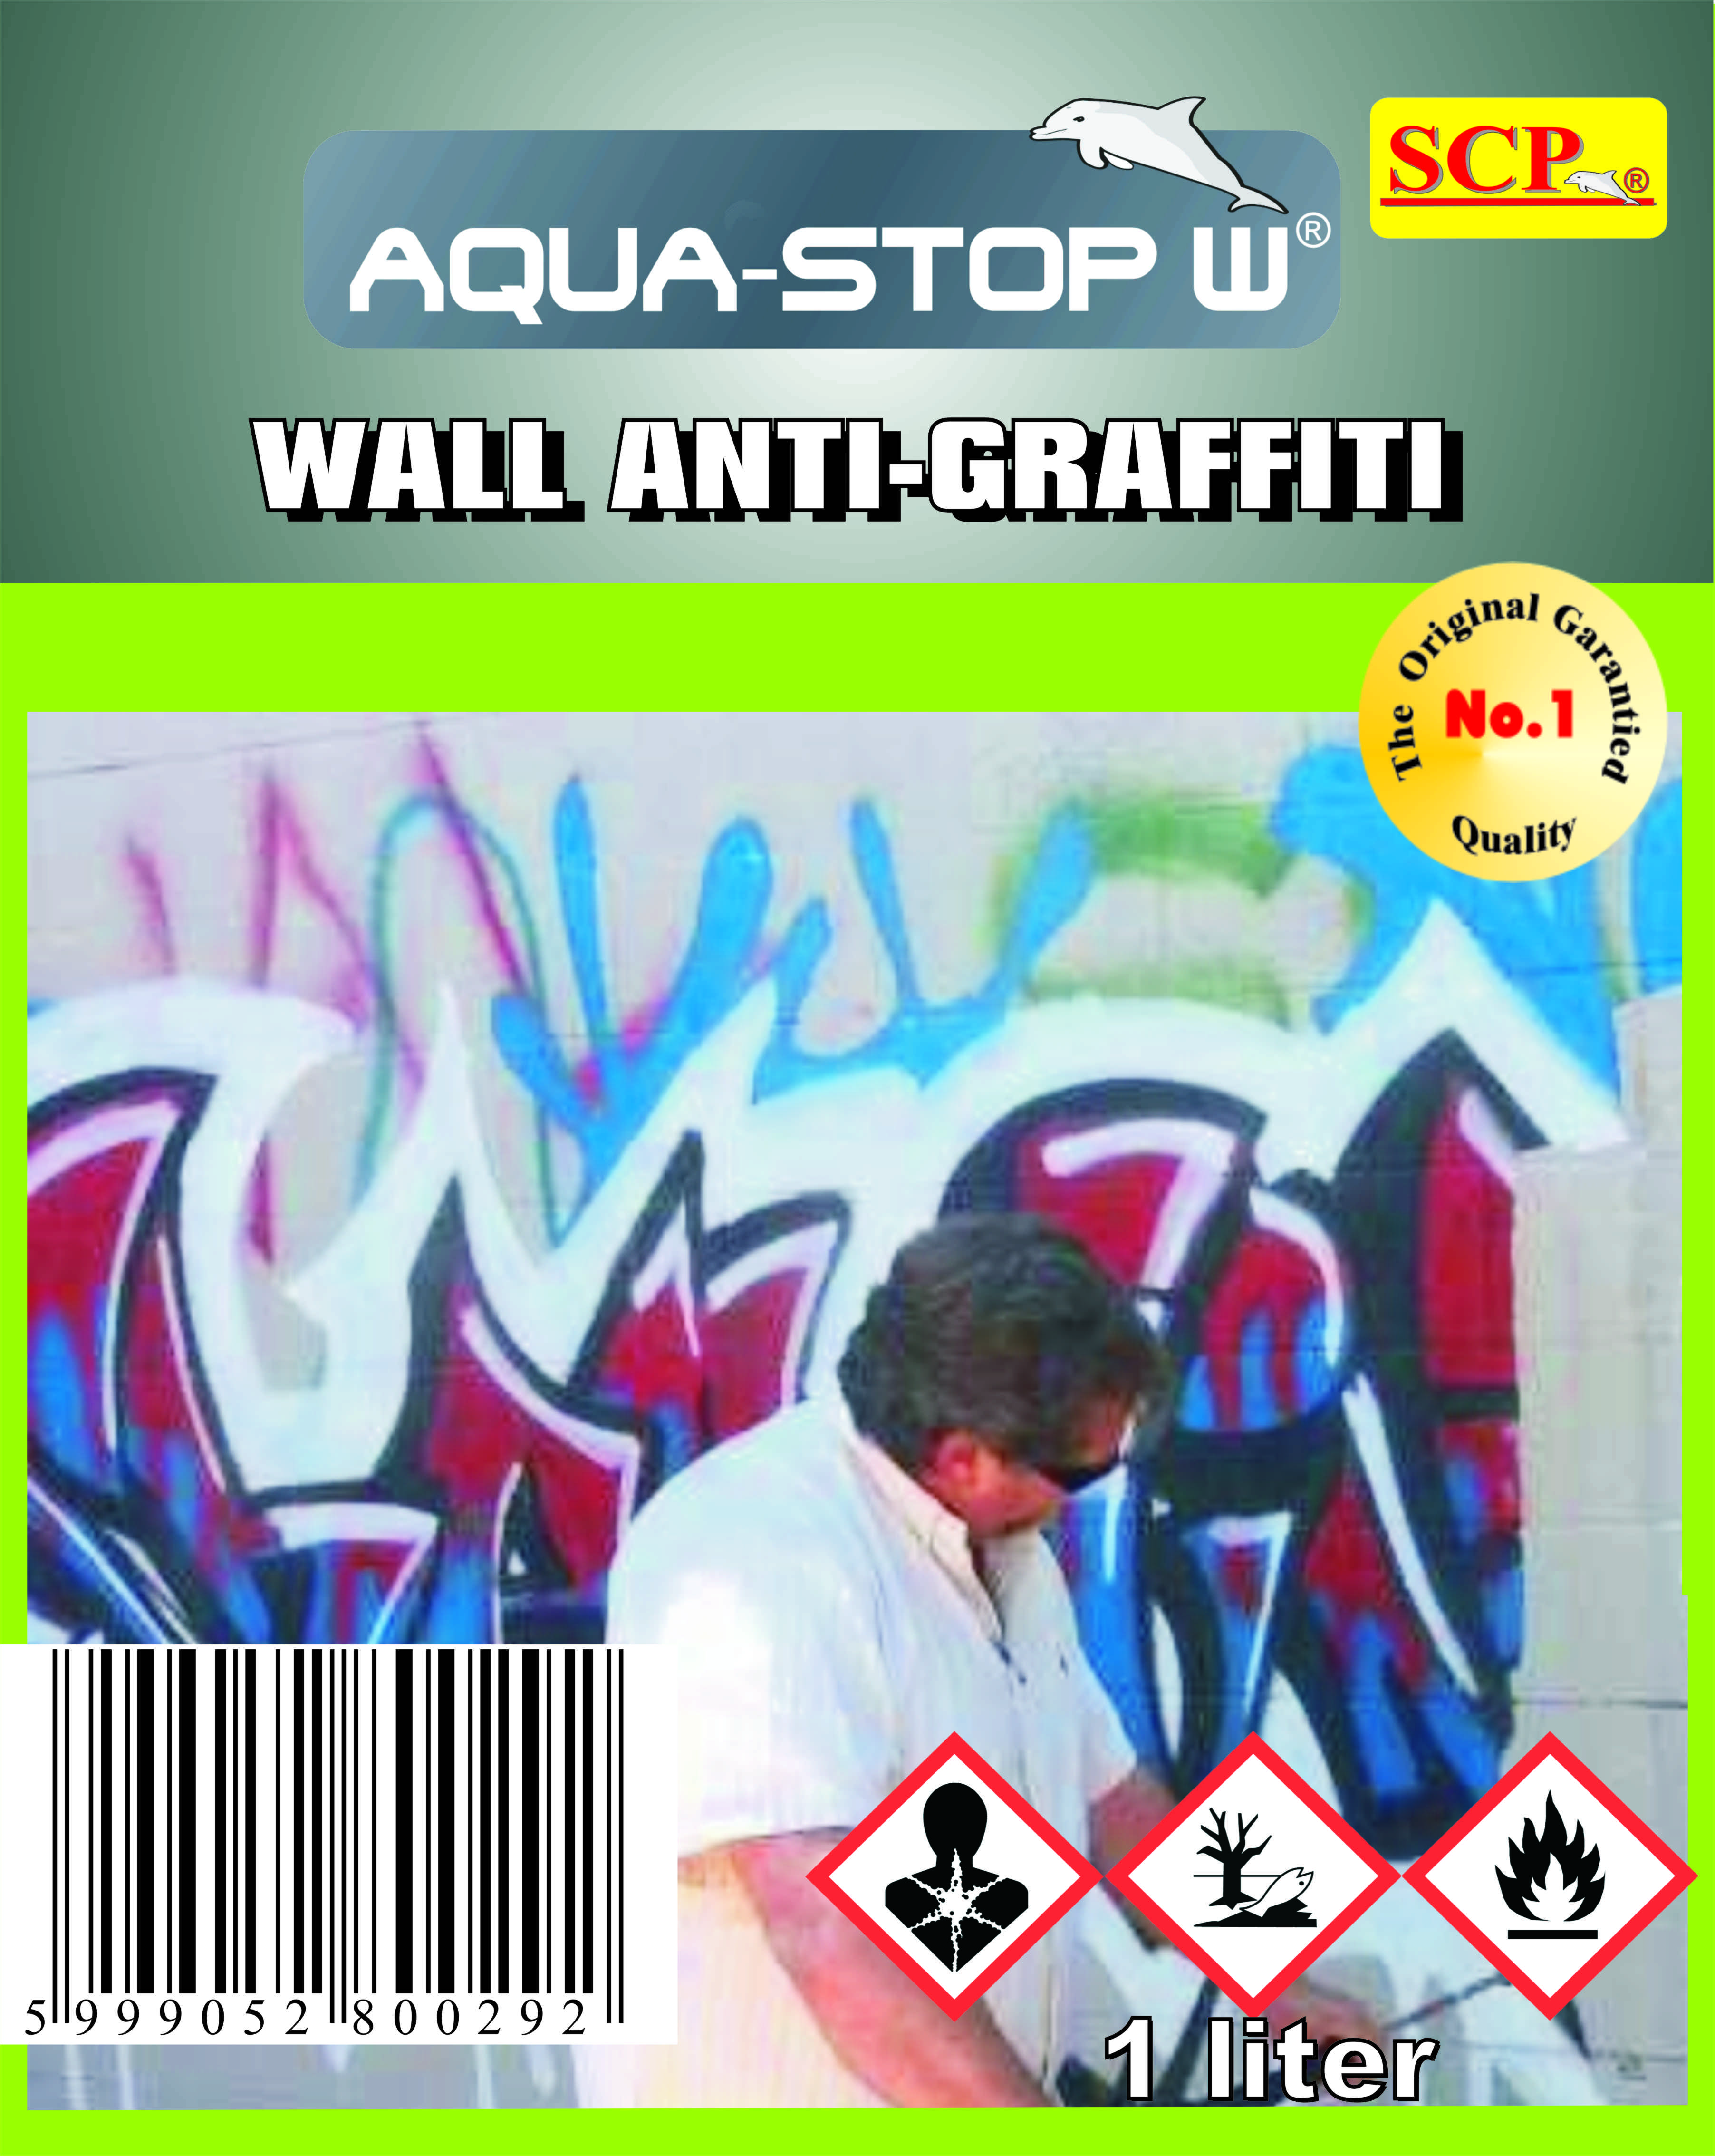 Wall Anti-Graffiti